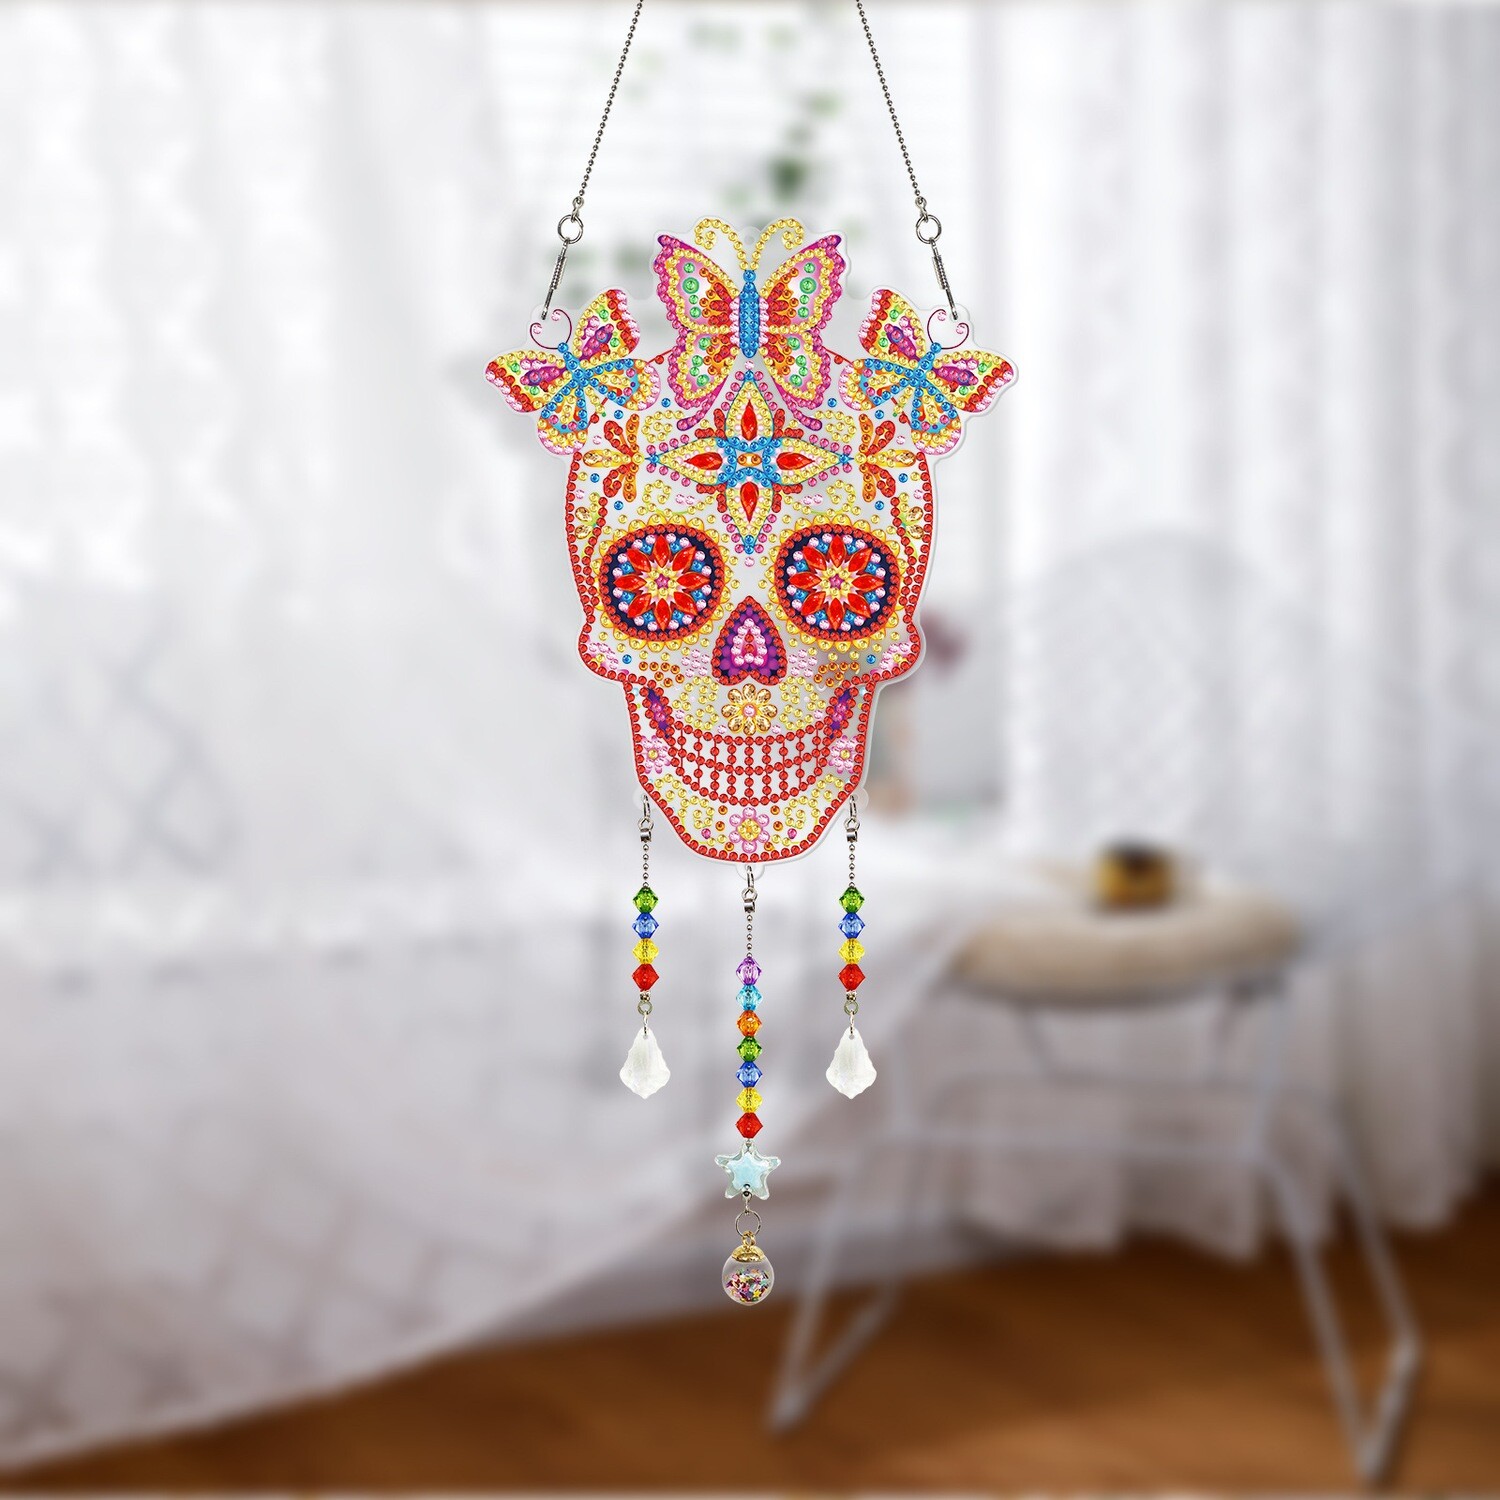 DIY Crystal Hanging Ornament - SKULL